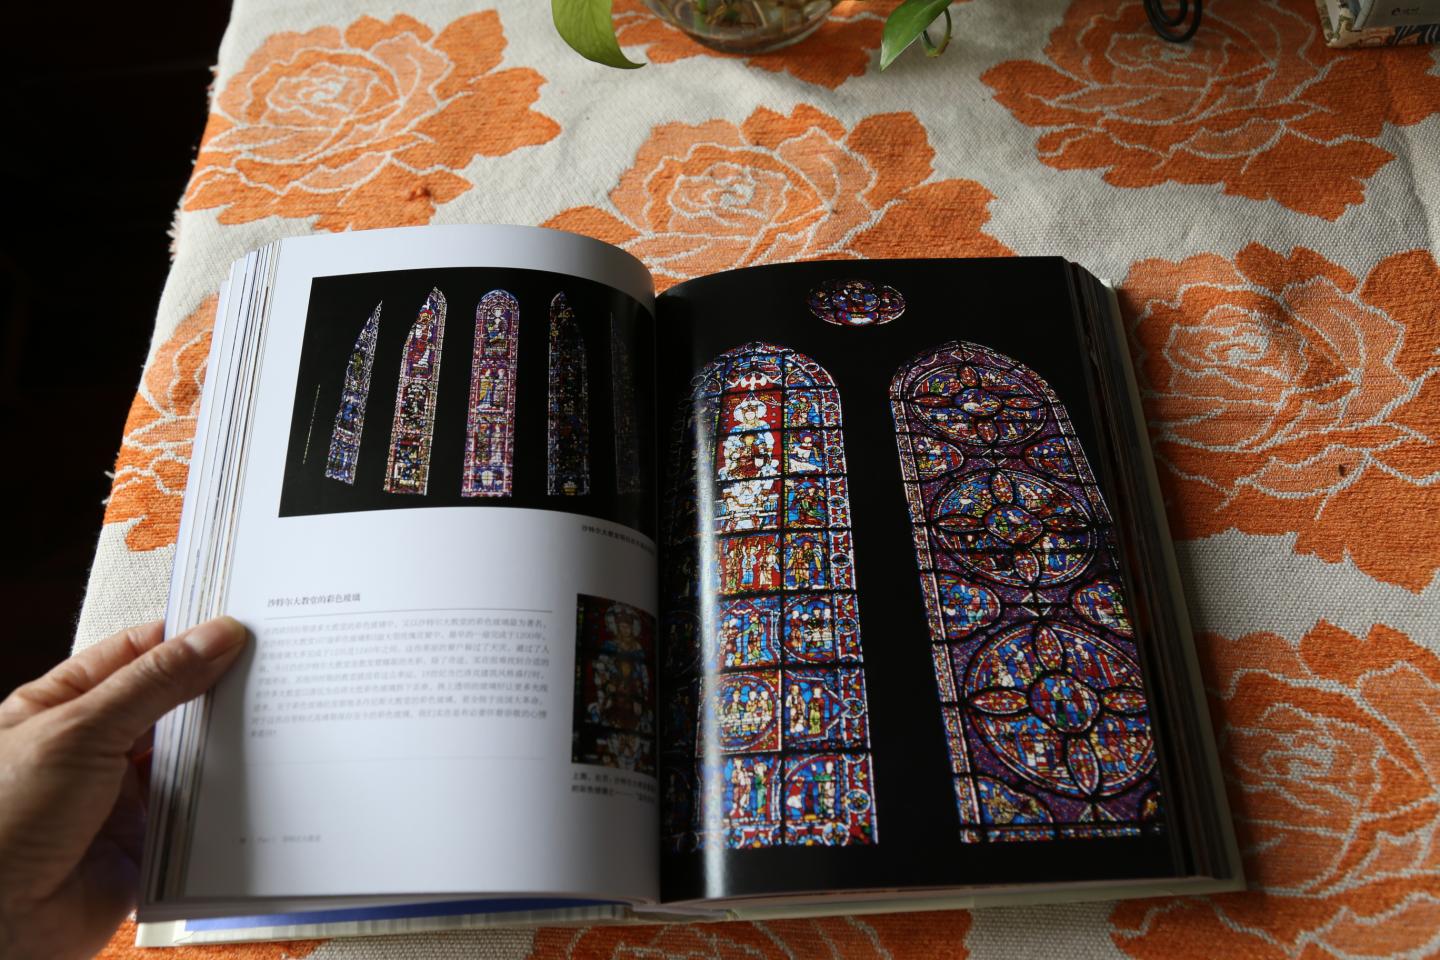 做为了解法国和德国的大教堂是一本不错的书，文字简练明了，16开的书展示图片有一定局限，但是也能满足阅读的需要，谢谢送货小哥的优质服务。